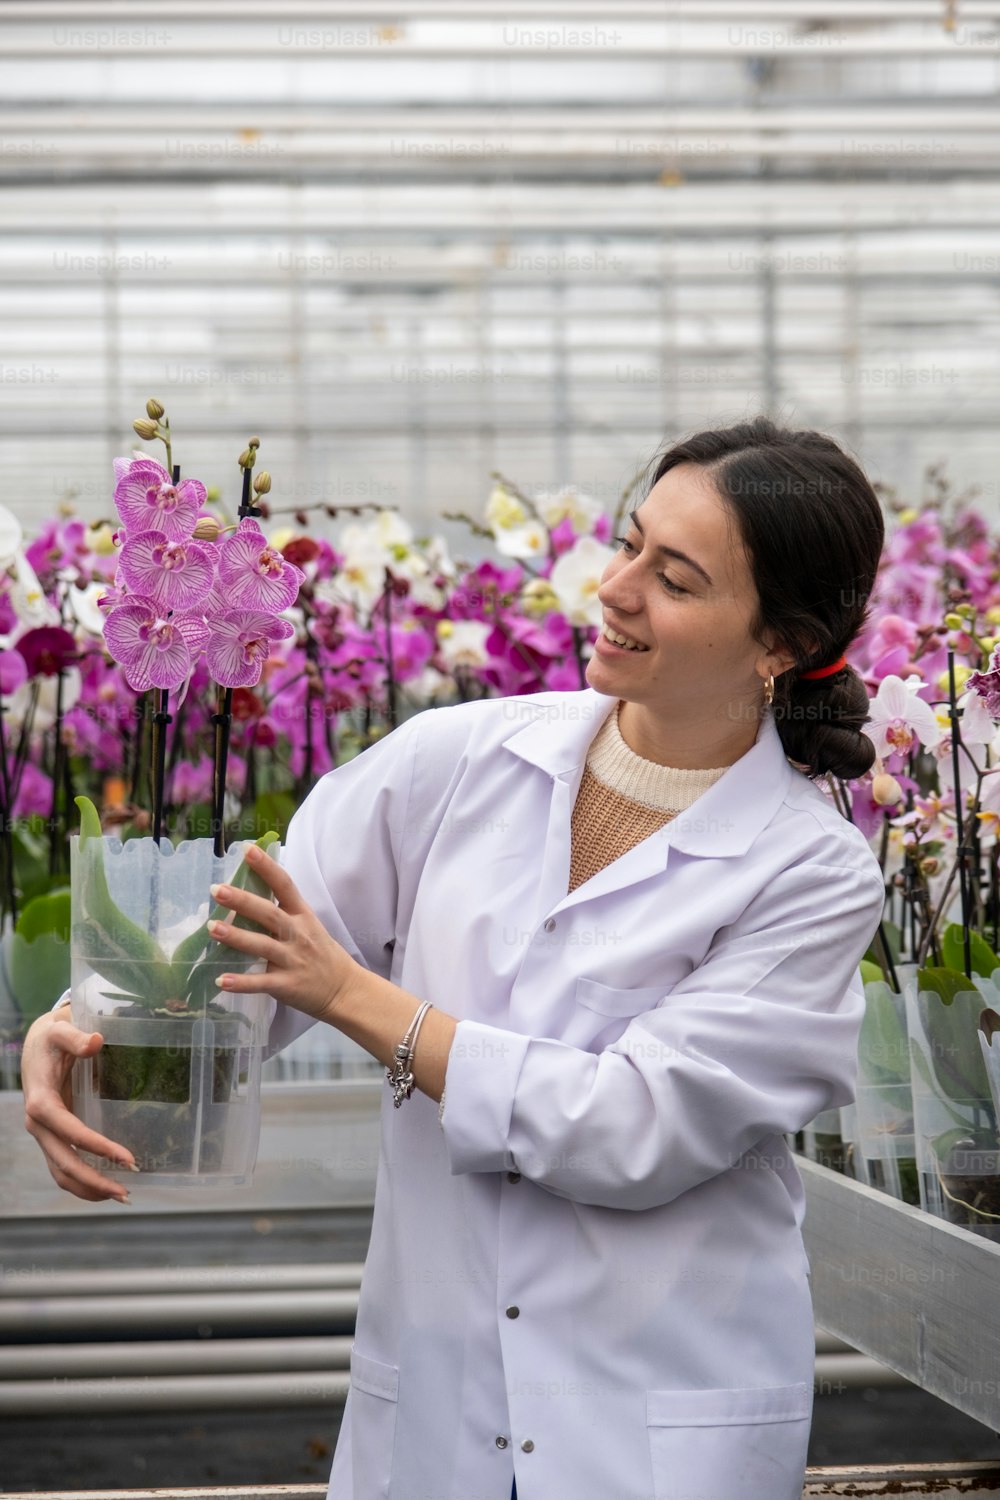 Una mujer con una bata blanca de laboratorio sosteniendo una planta en maceta